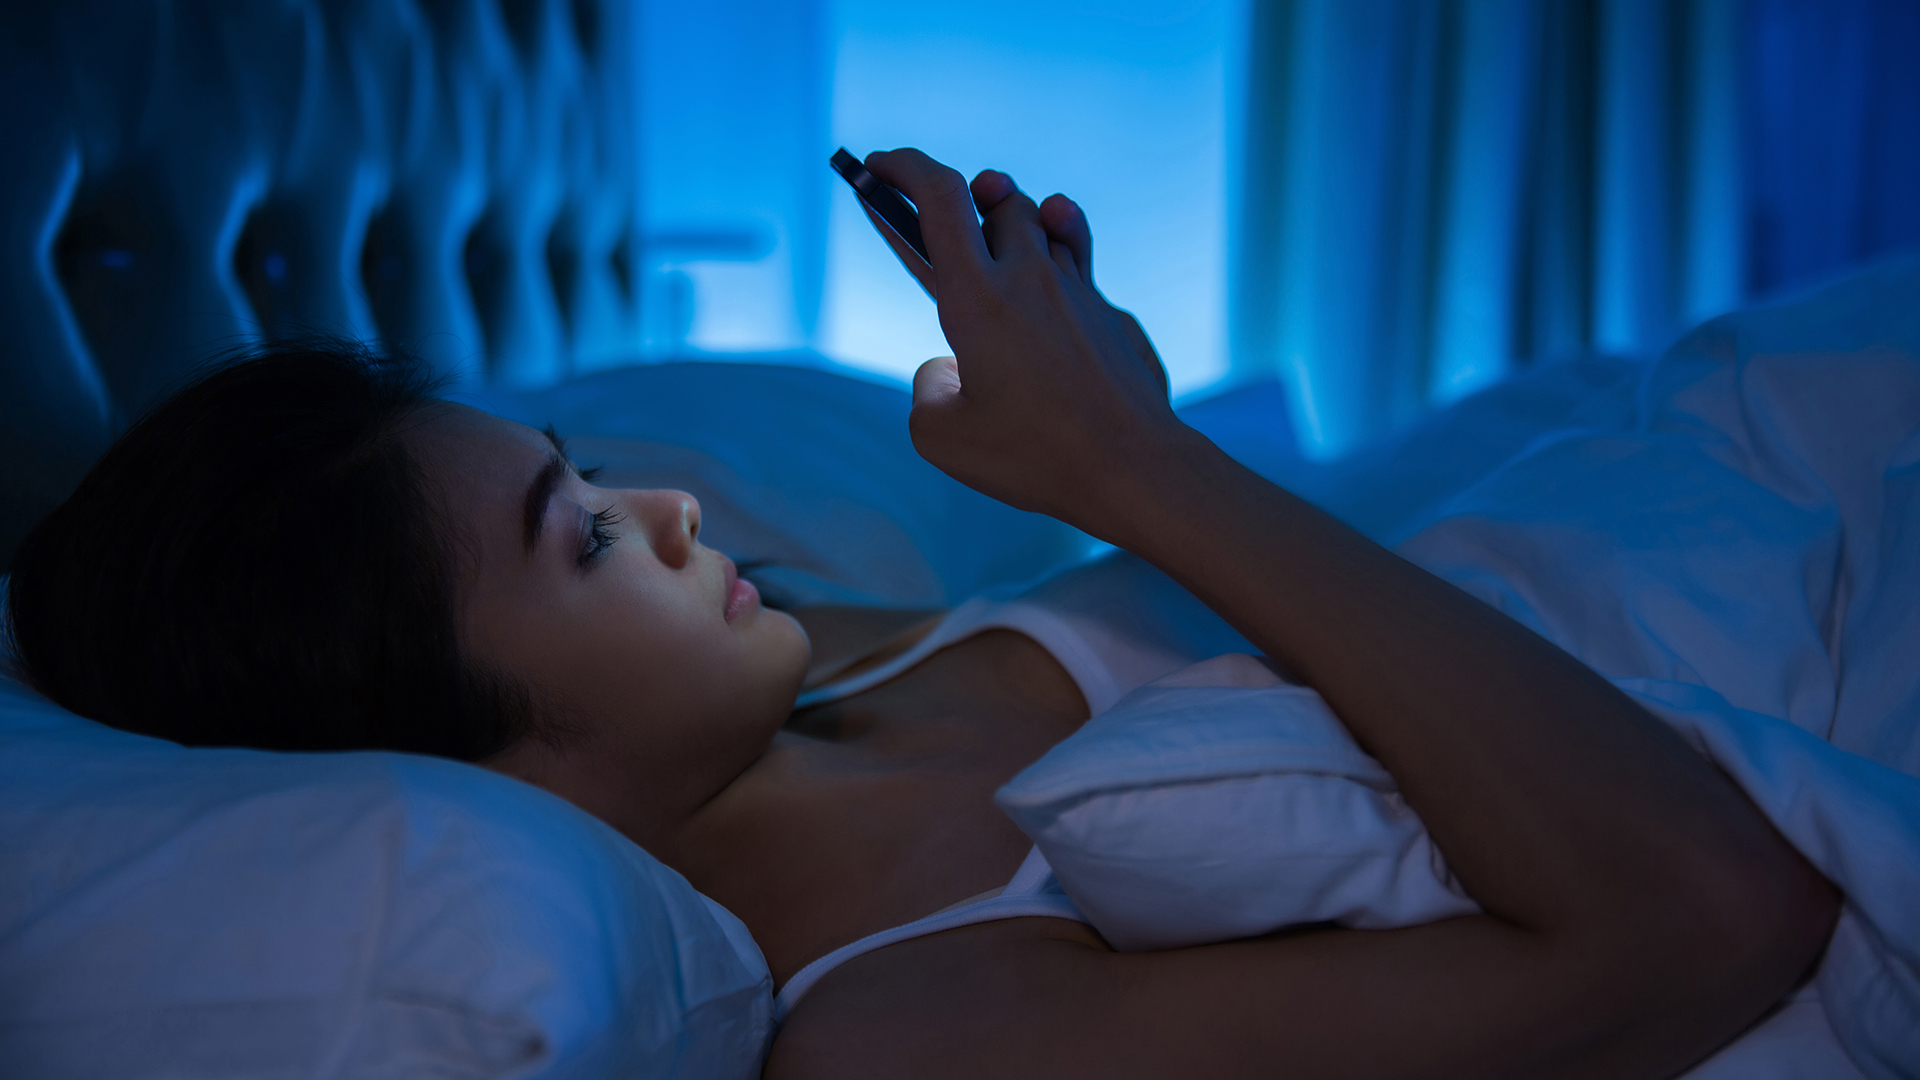 Cómo cambiar los colores de la pantalla del celular para dormir o relajarse